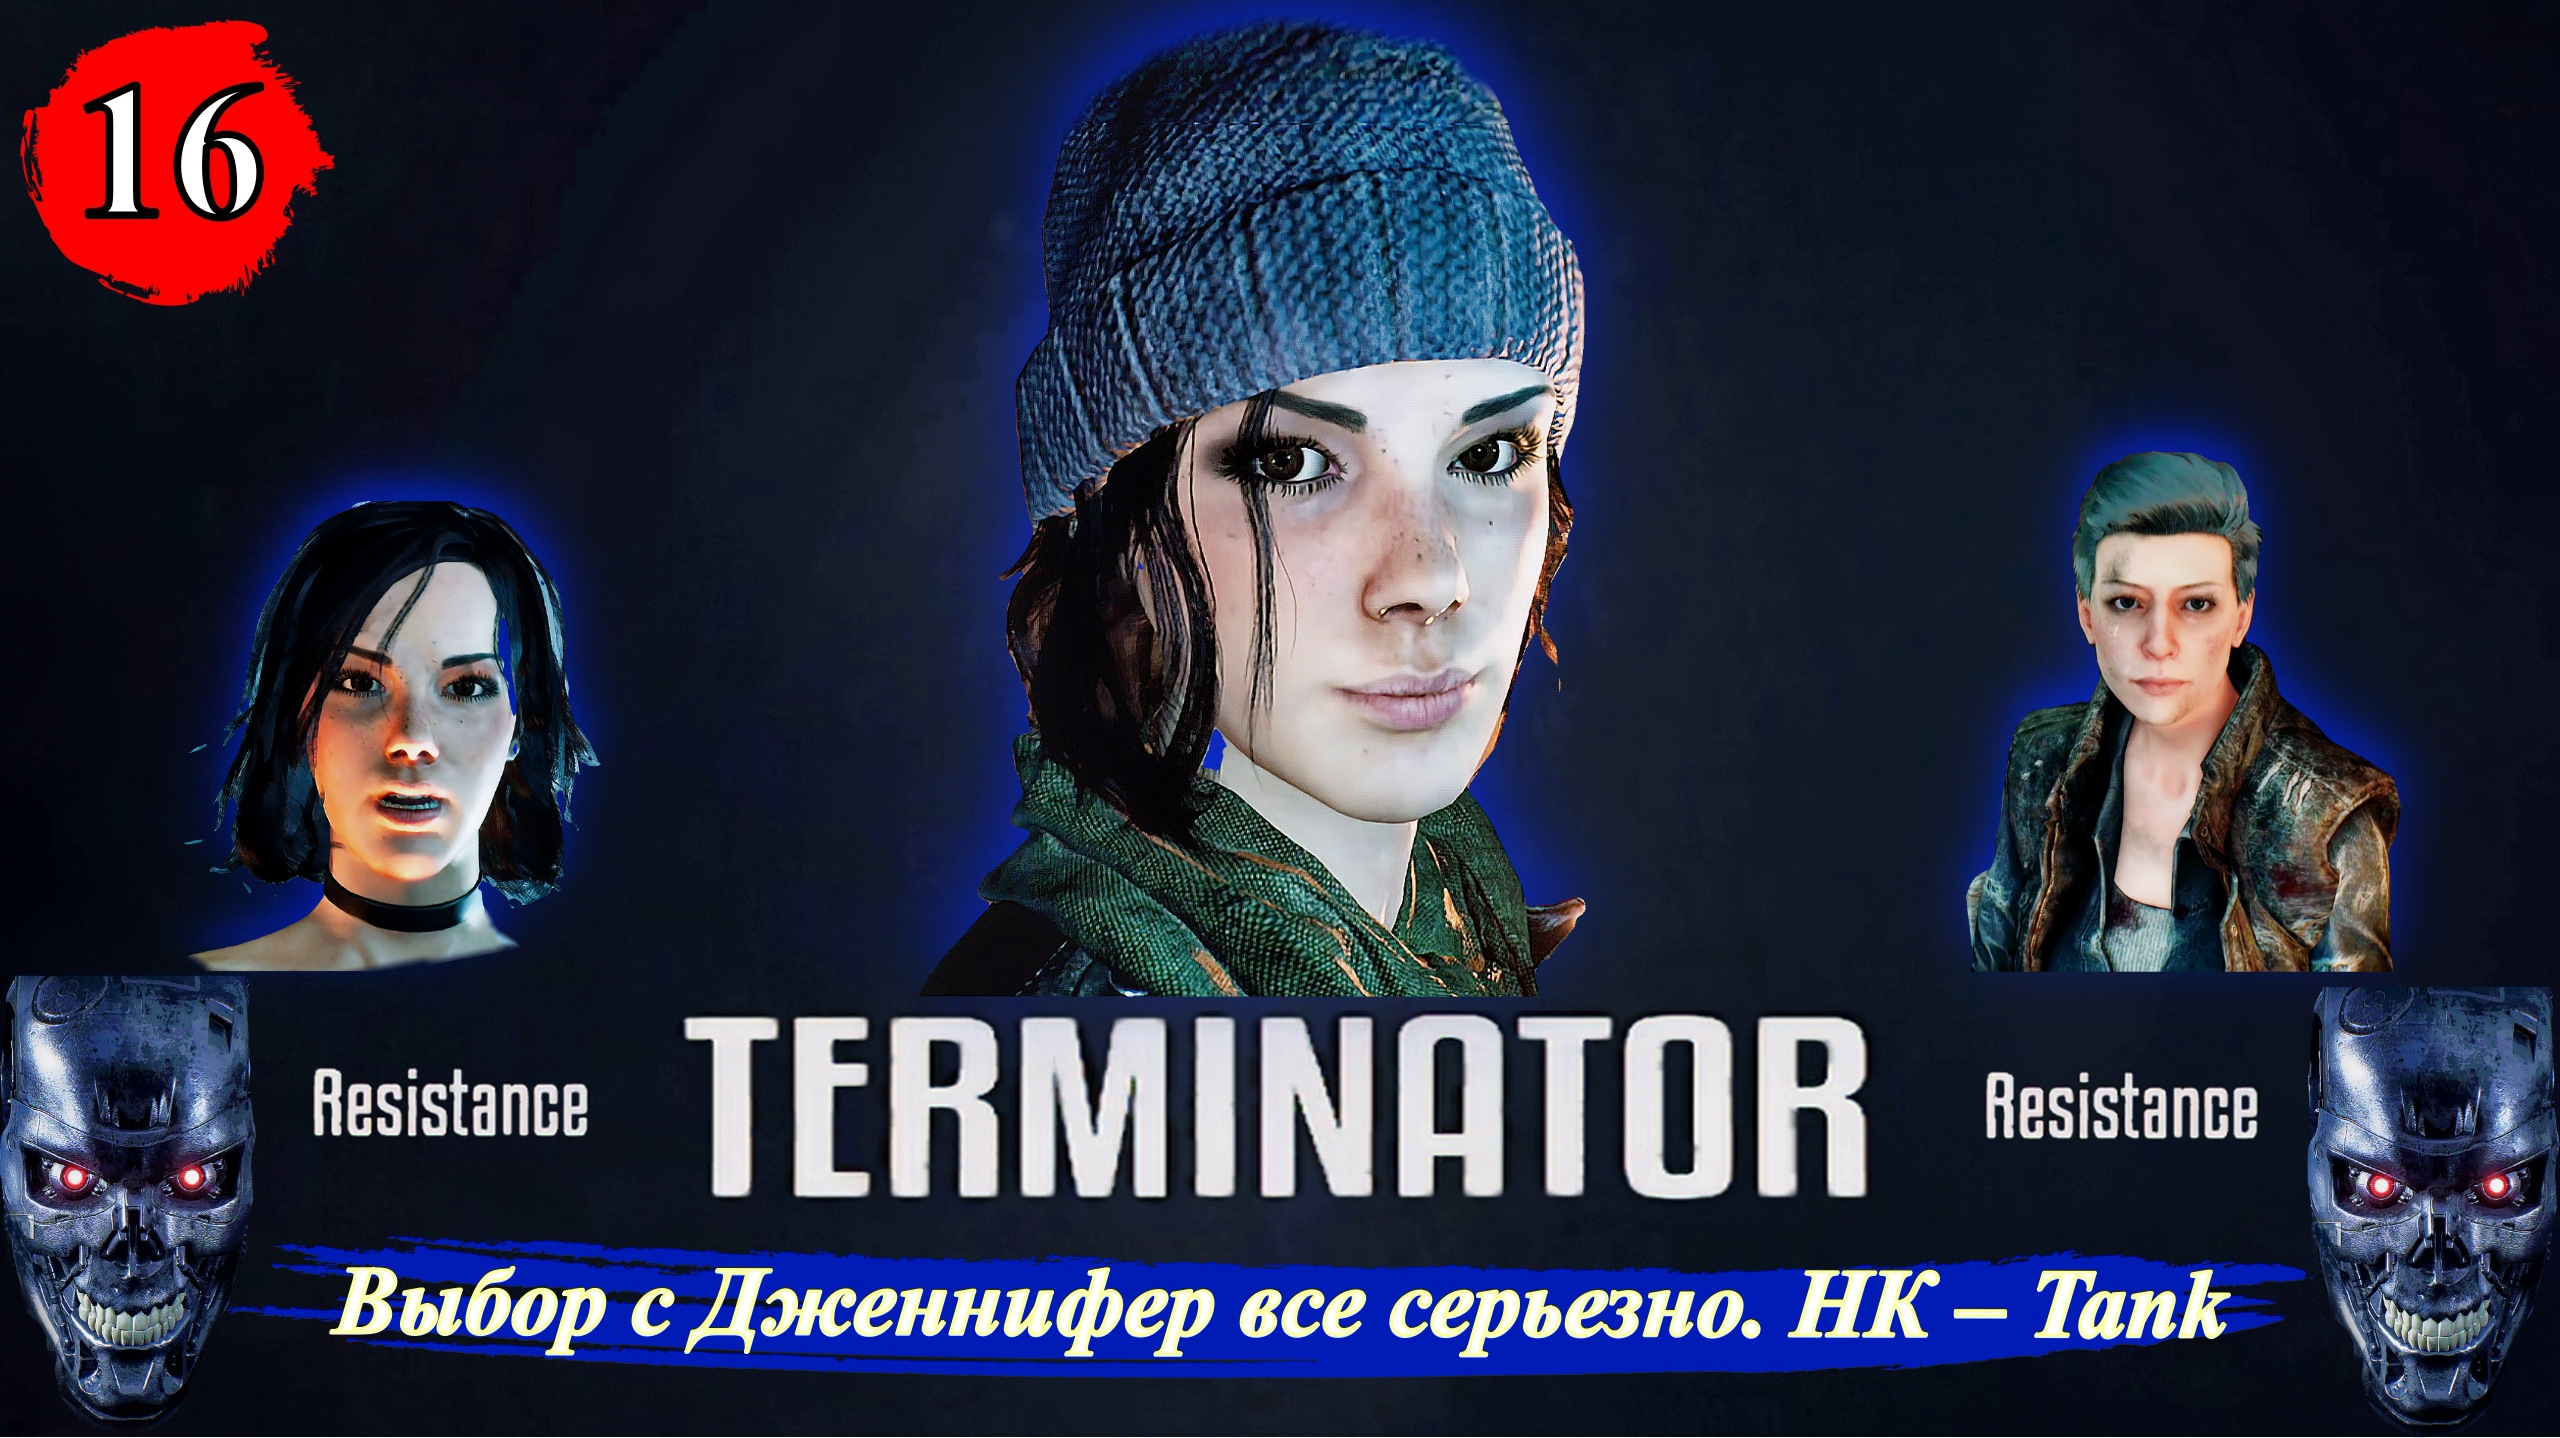 Terminator Resistance Выбор с Дженнифер все серьезно. НК – Tank - Прохождение. Часть 16